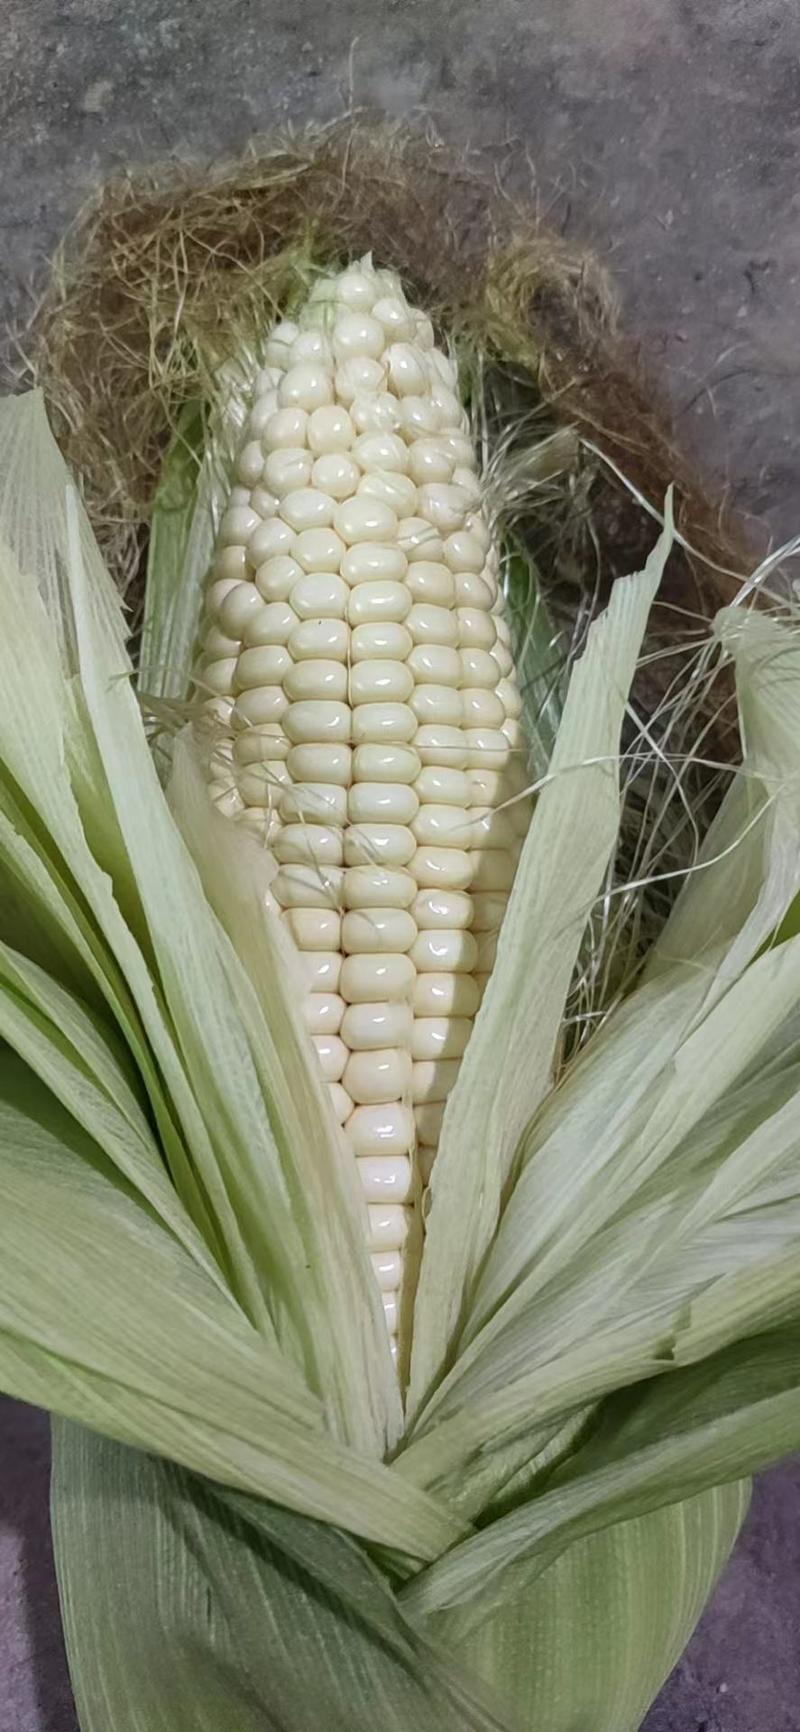 黏玉米糯玉米夏津粮蔬种植基地大量供应黏玉米